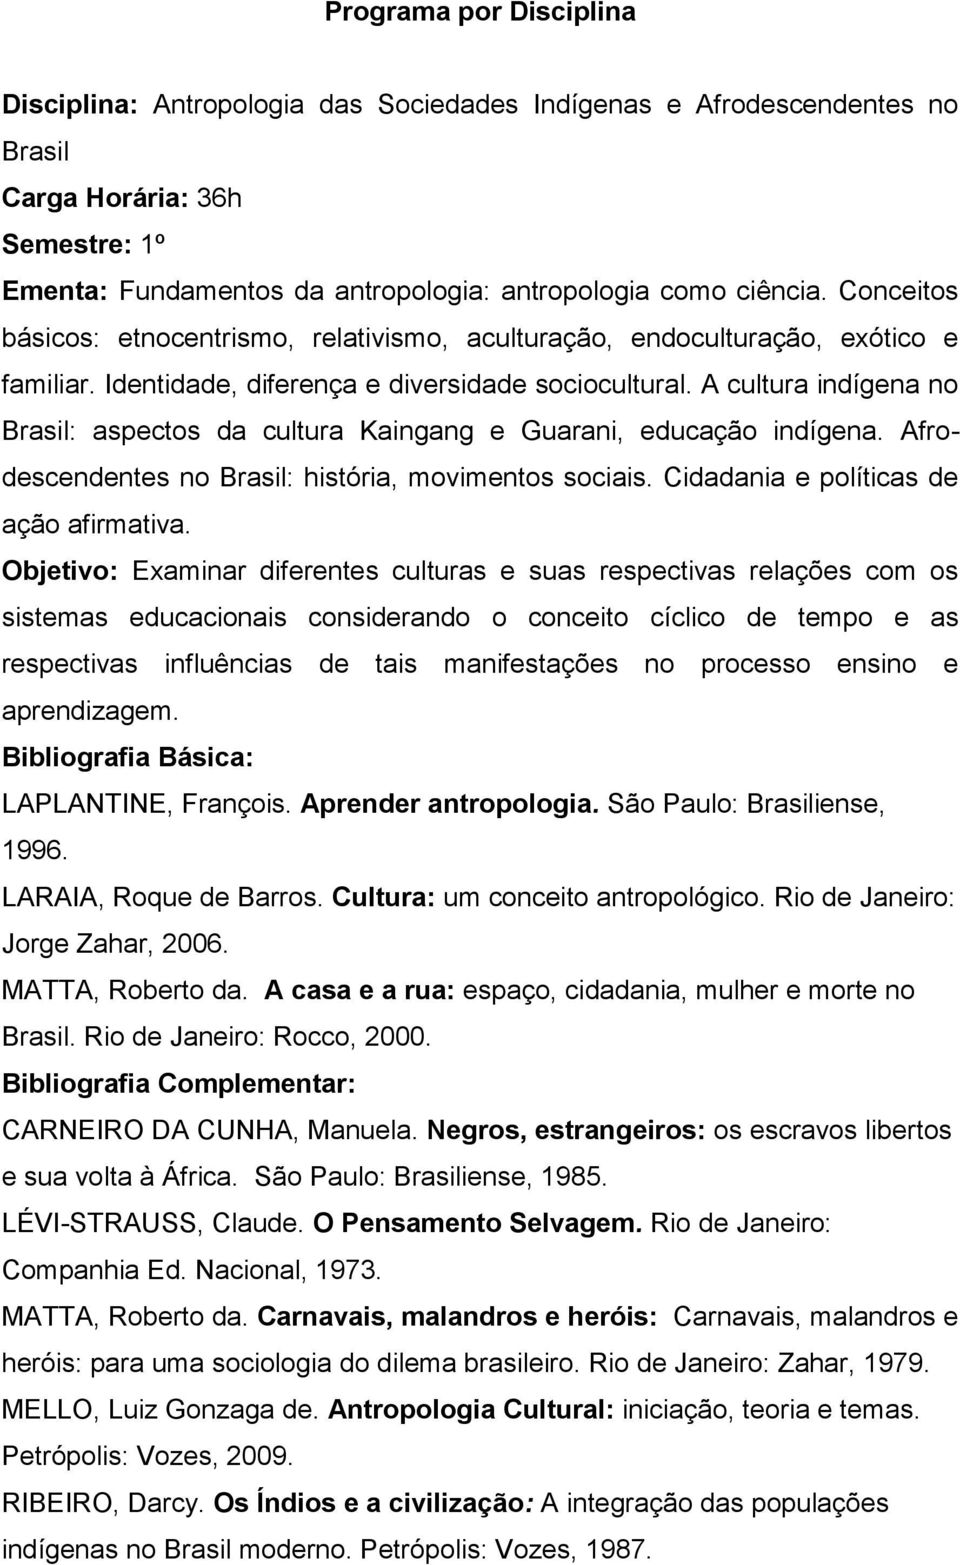 A cultura indígena no Brasil: aspectos da cultura Kaingang e Guarani, educação indígena. Afrodescendentes no Brasil: história, movimentos sociais. Cidadania e políticas de ação afirmativa.